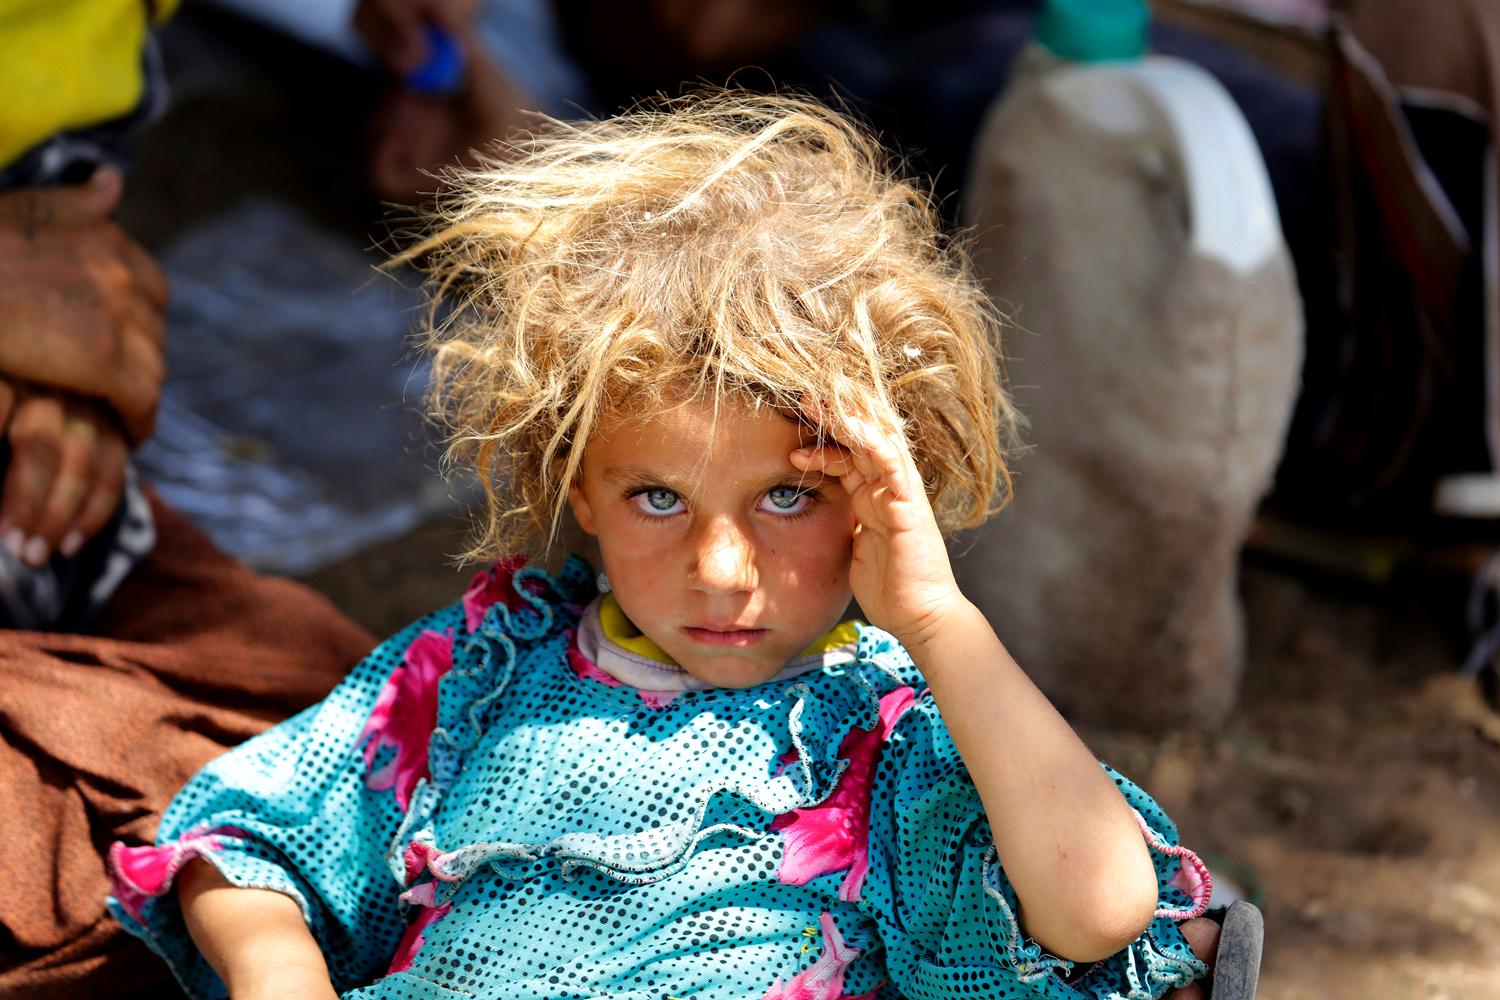 Az iraki konfliktus miatt is nagyon sok gyereknek kell elhagynia otthonát